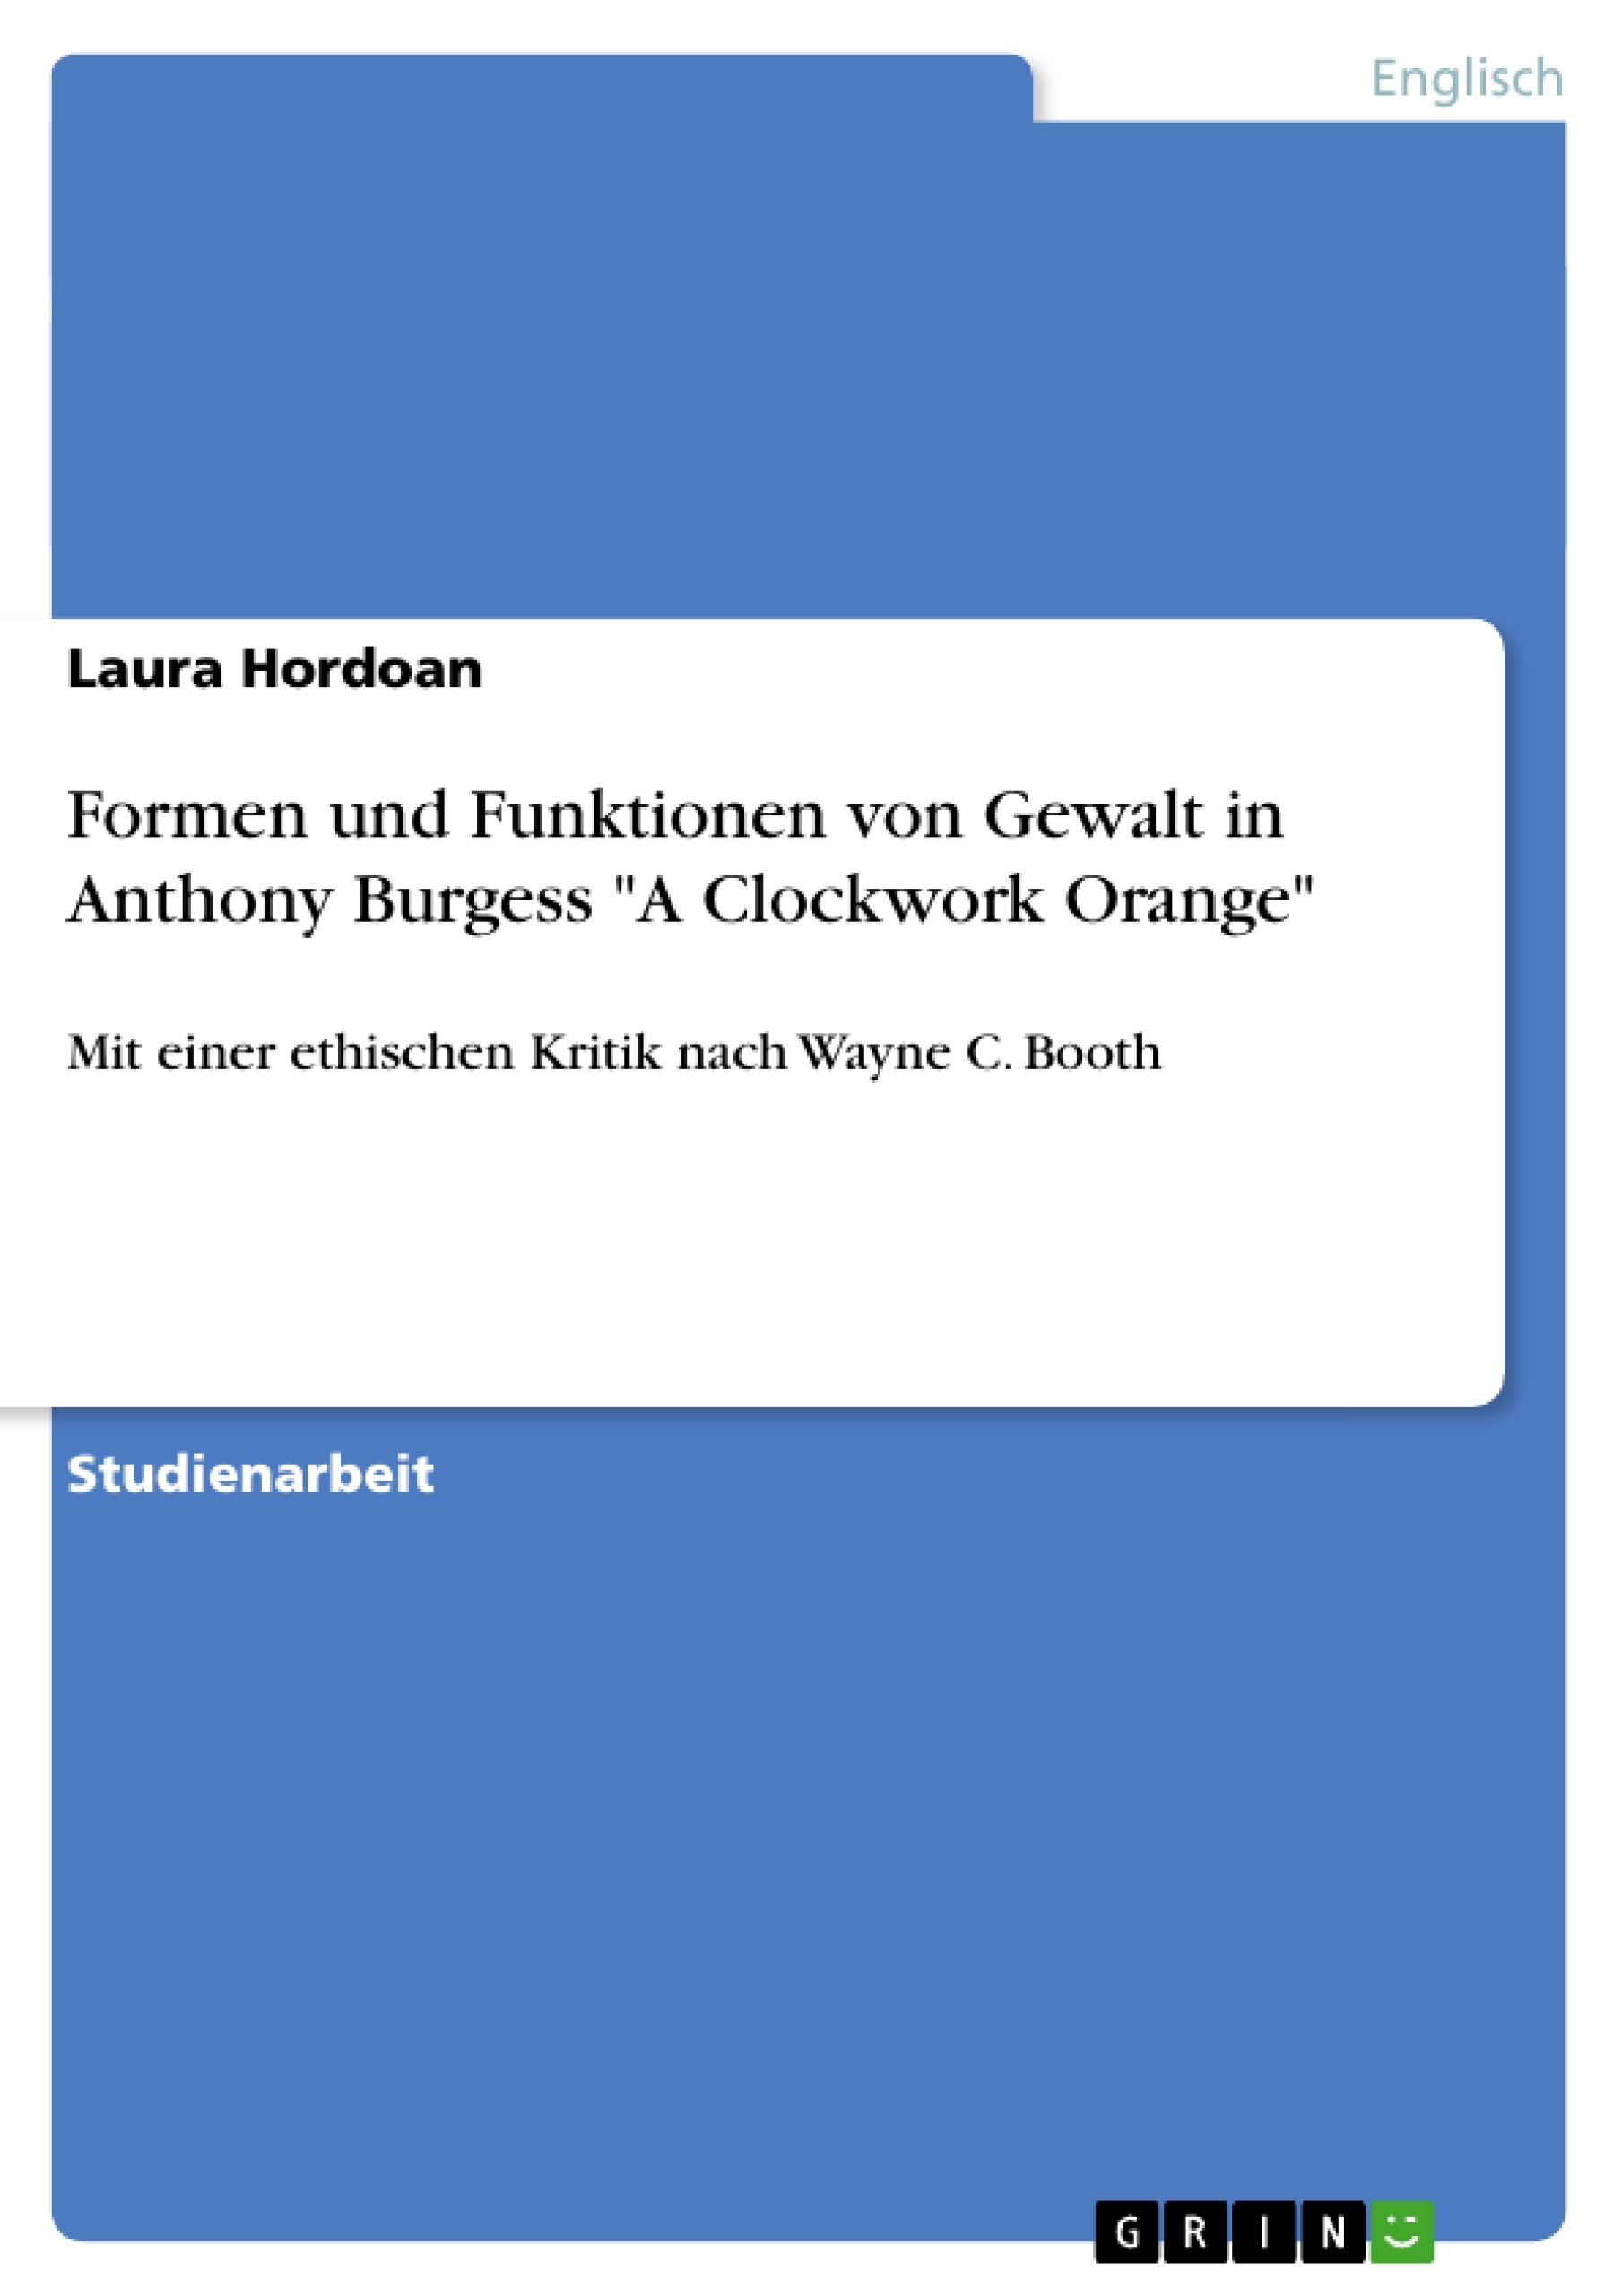 Título: Formen und Funktionen von Gewalt in Anthony Burgess "A Clockwork Orange" 